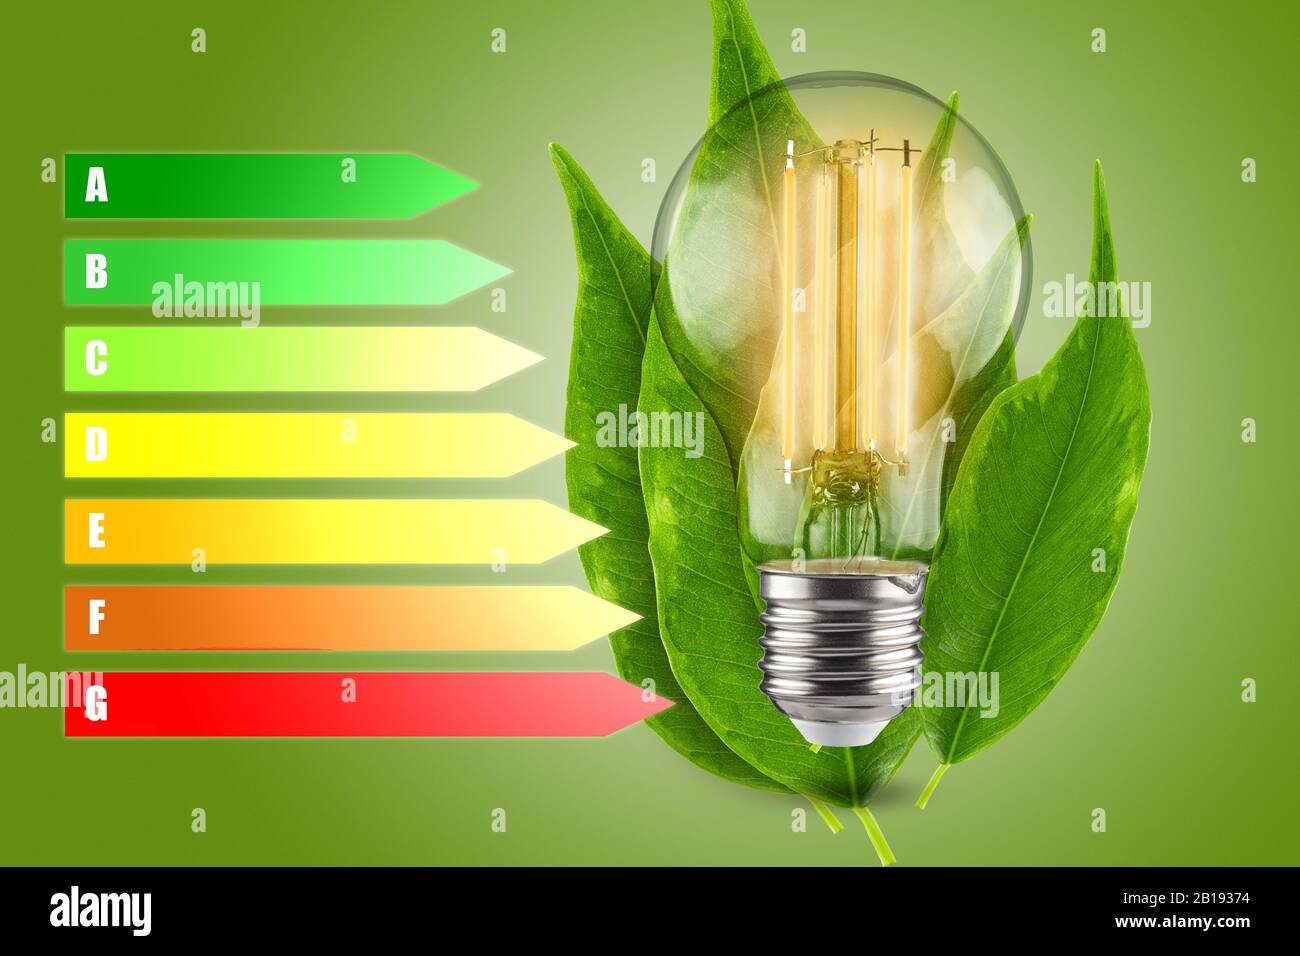 Concept d'efficacité énergétique des lampes LED. Diminution de la consommation d'électricité. Feuilles vertes d'une plante en arrière-plan. Banque D'Images